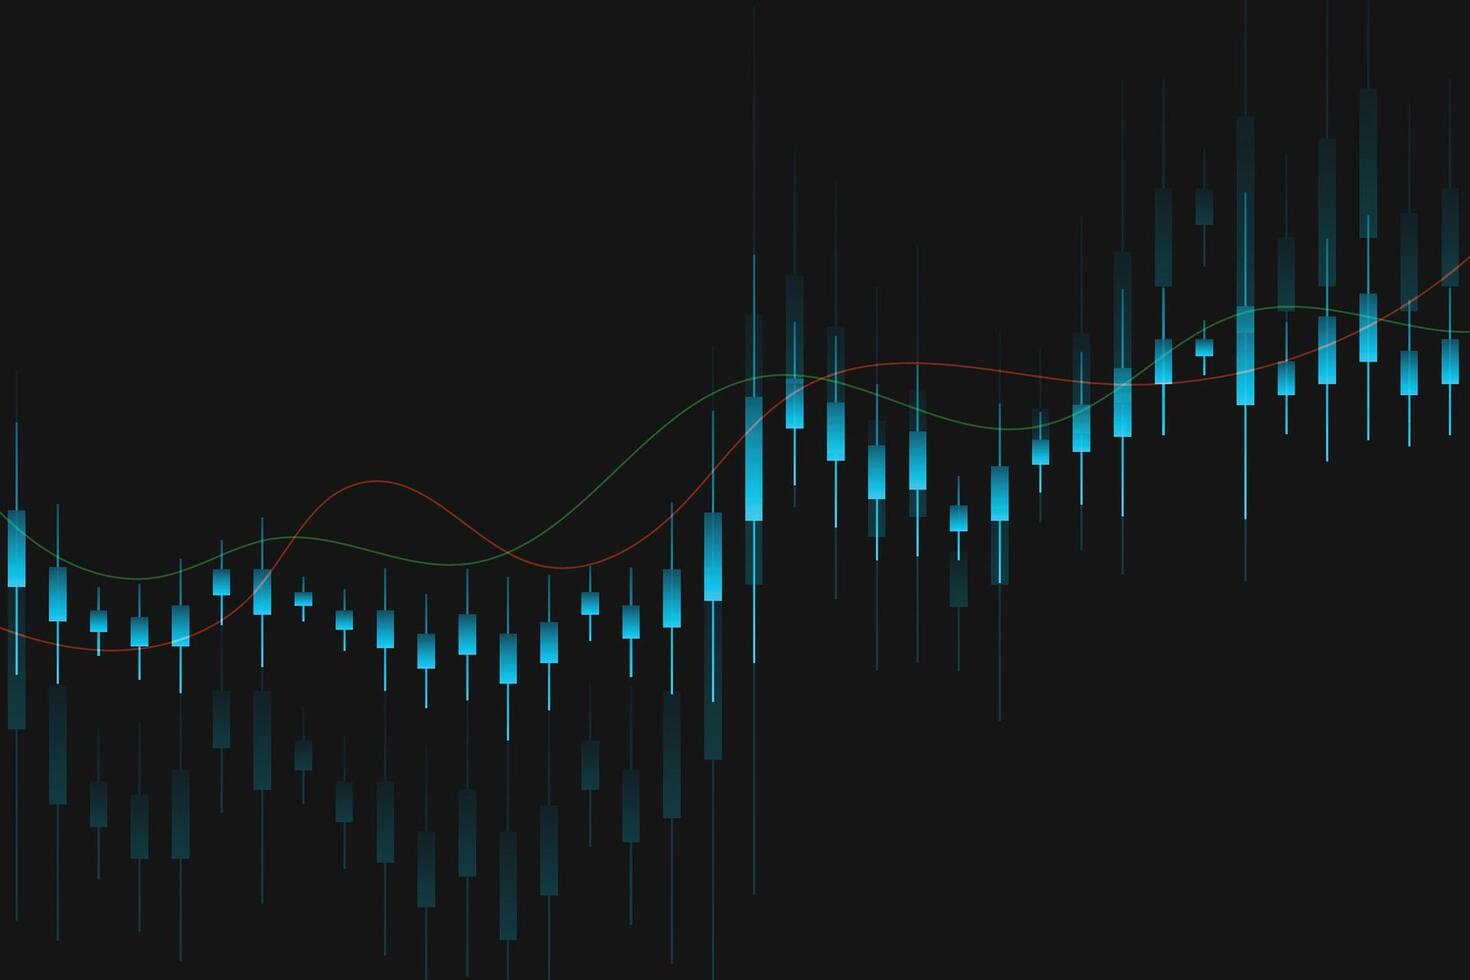 finanziario attività commerciale statistica con bar grafico e candeliere grafico mostrare azione mercato prezzo su buio sfondo vettore